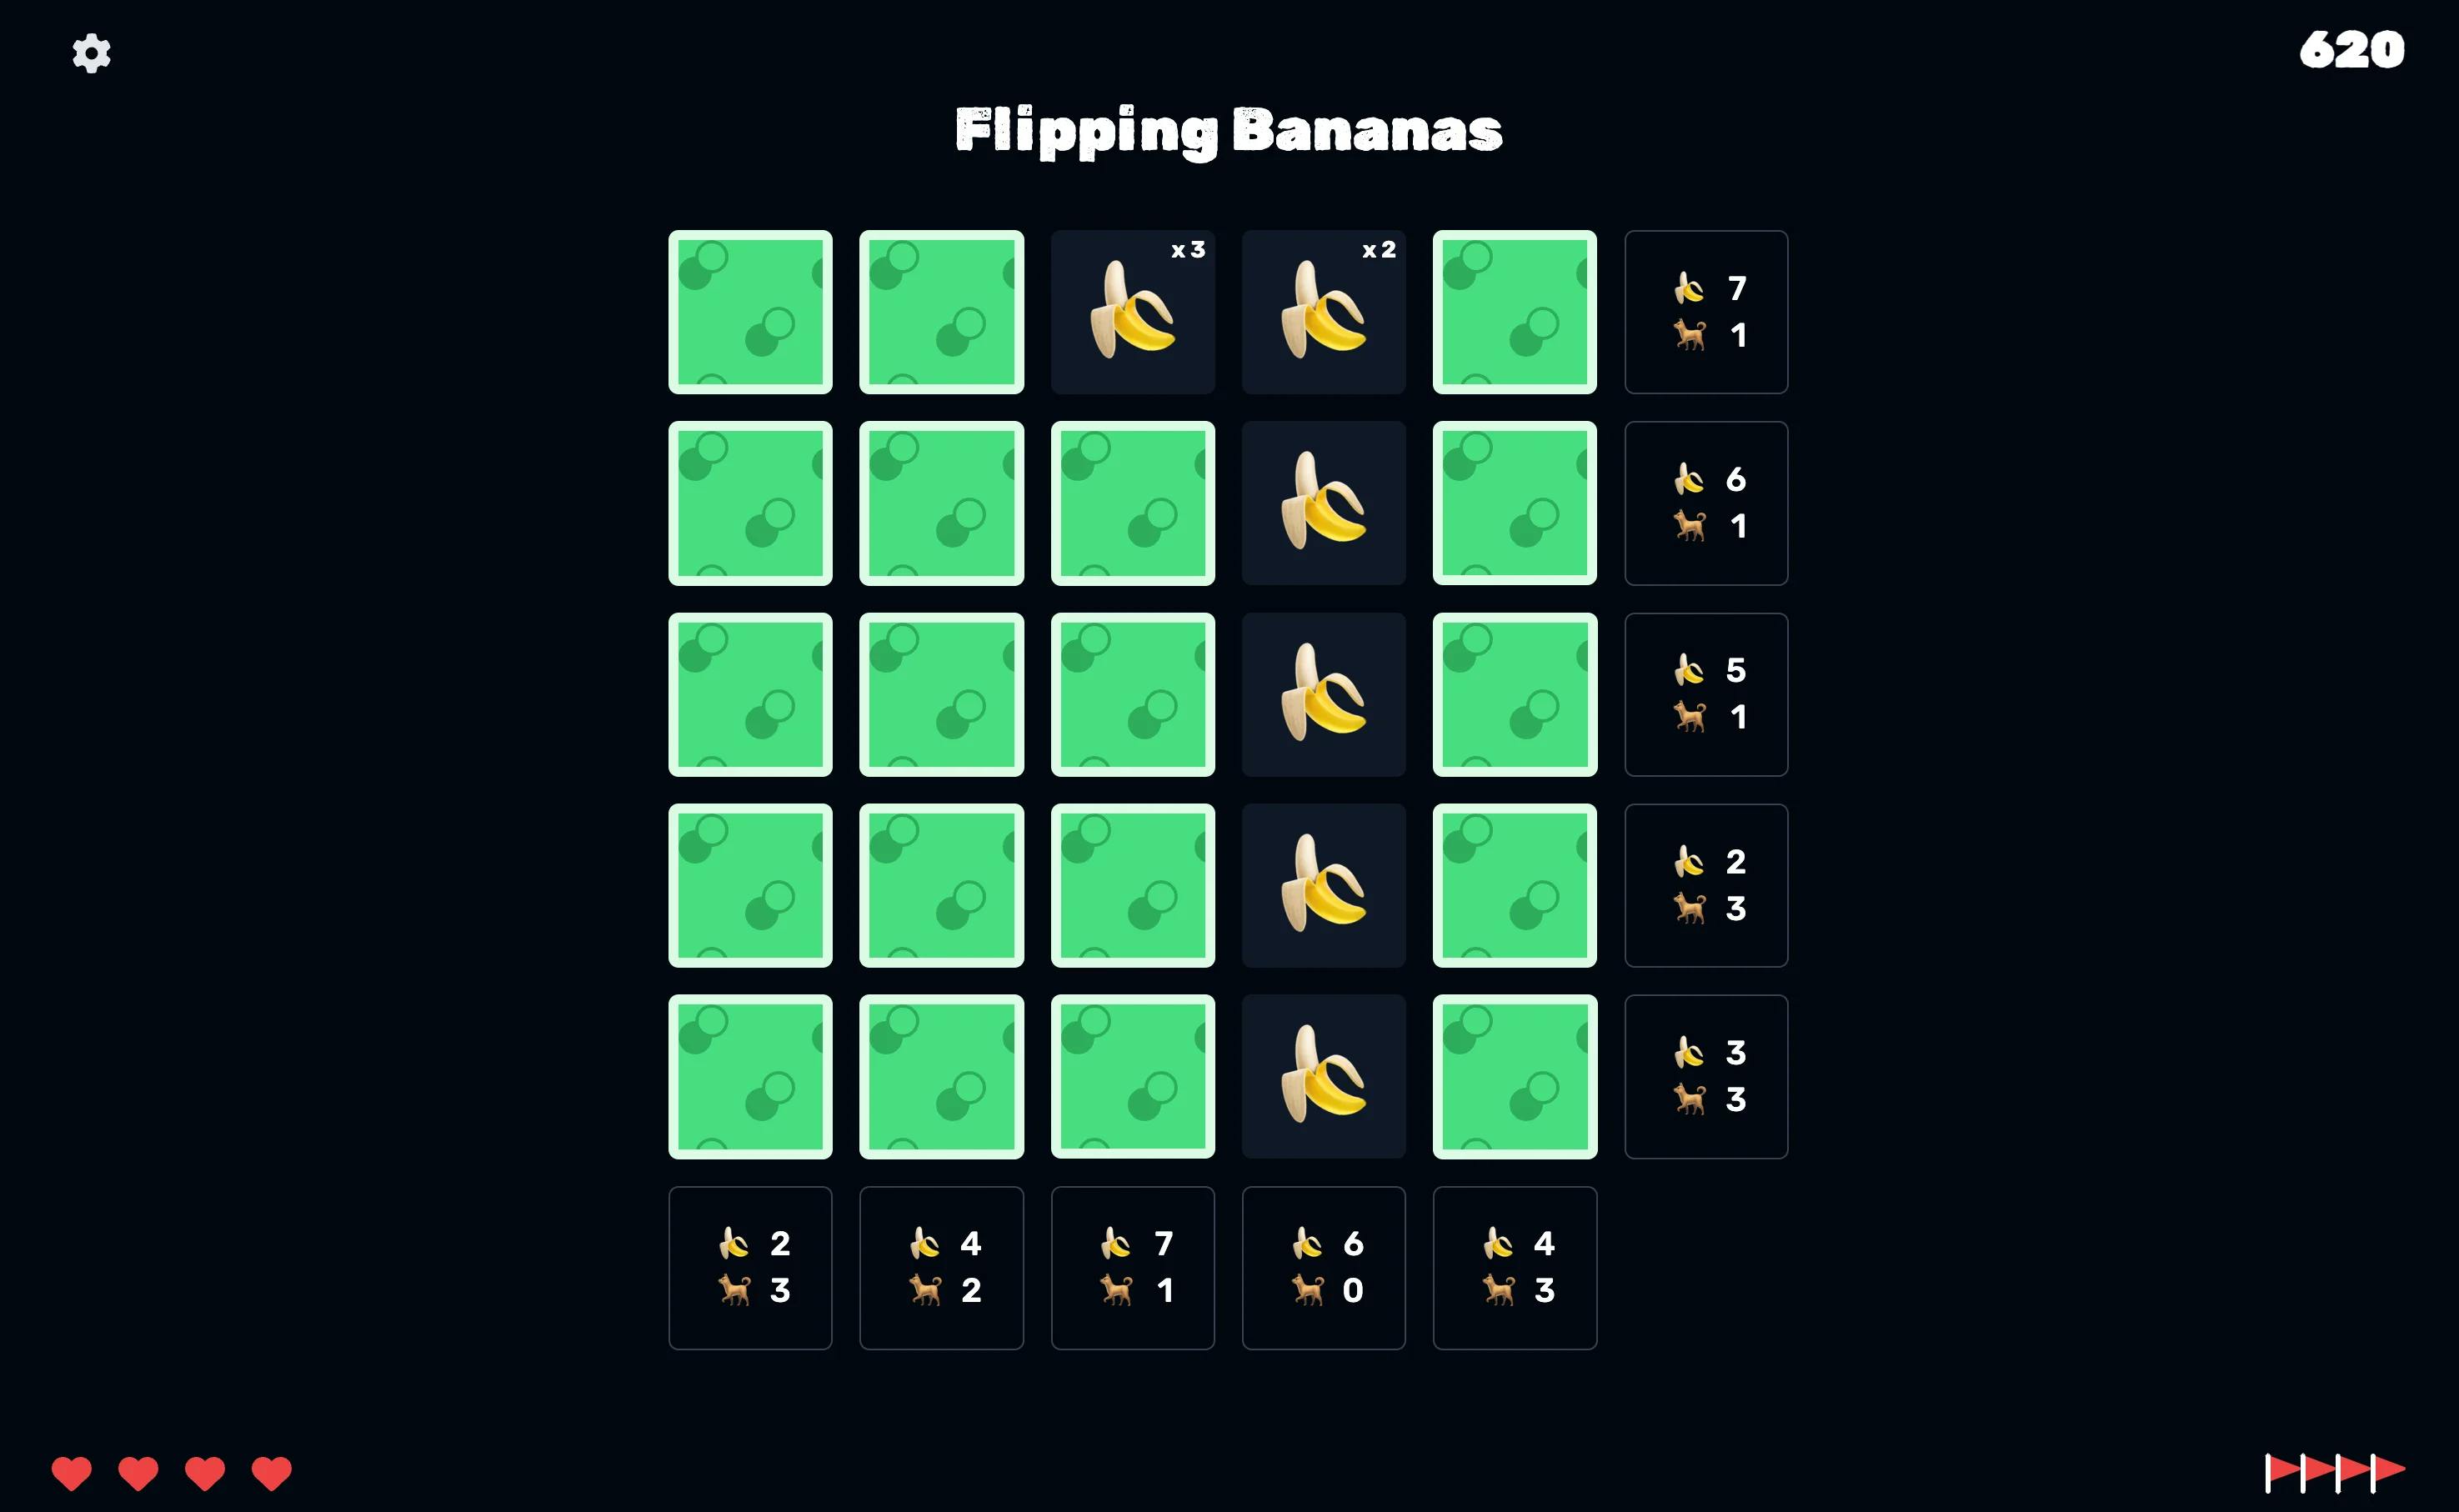 Flipping bananas game screen